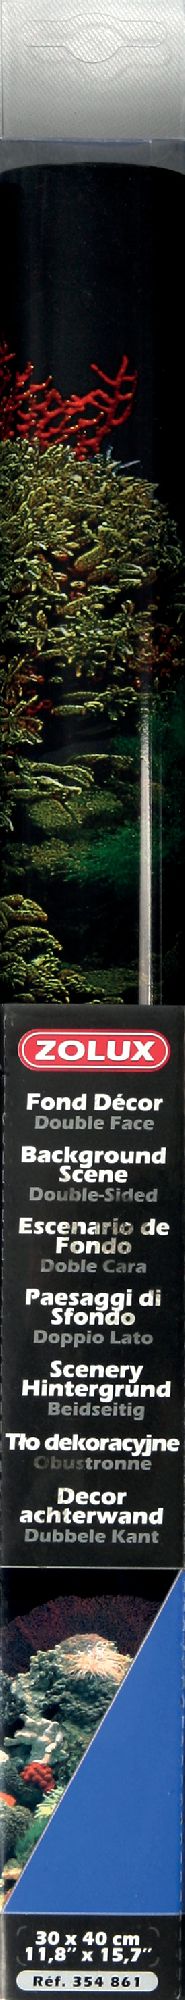 Zolux Tlo akwariowe dwustronne 30 x 40 cm - koralowiec/niebieskie 1120480 (3336023548616)